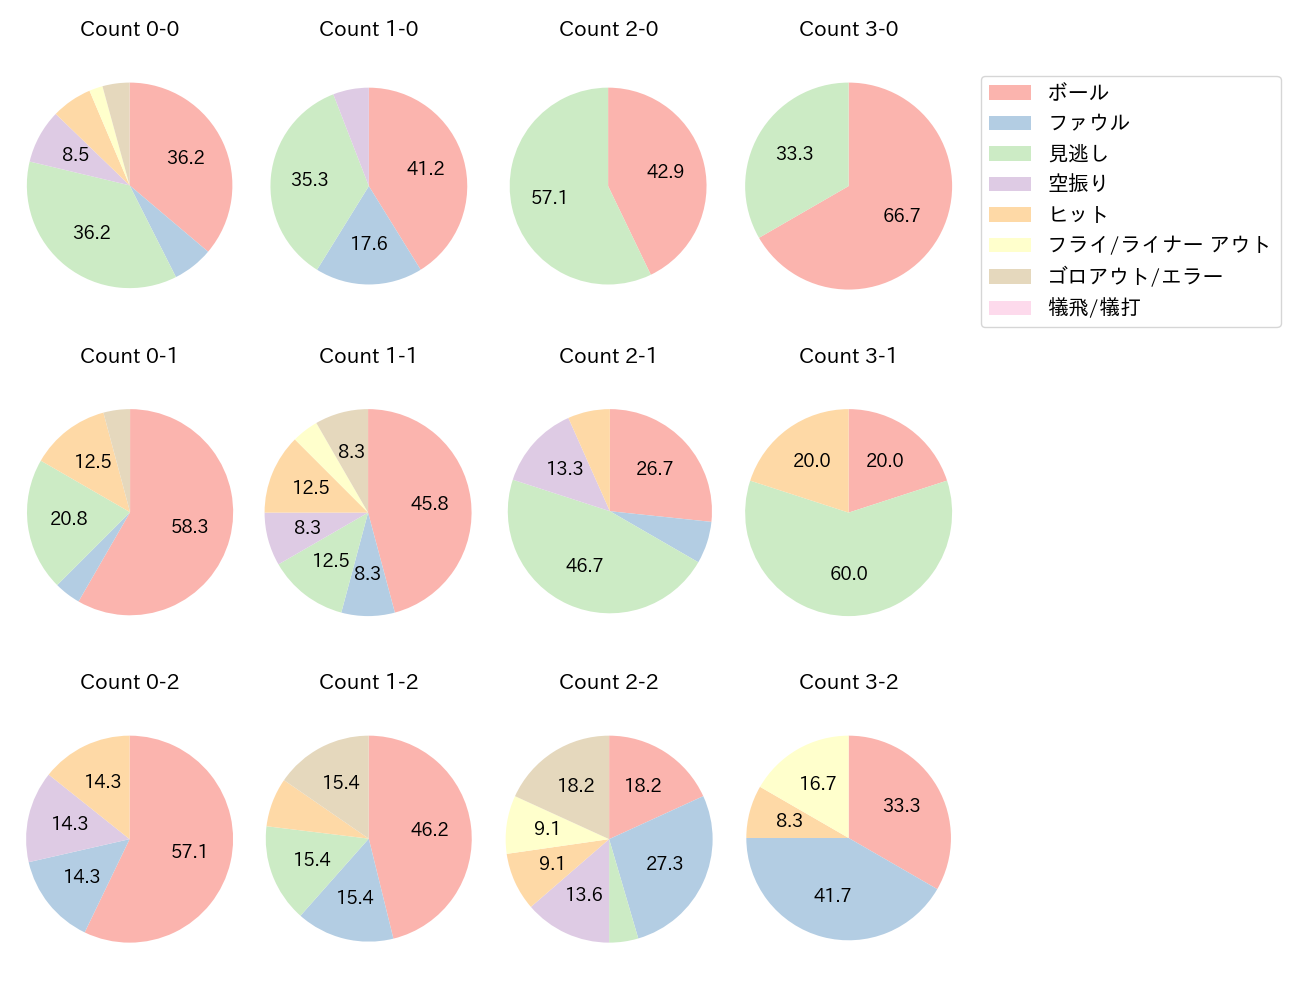 西川 龍馬の球数分布(2021年8月)